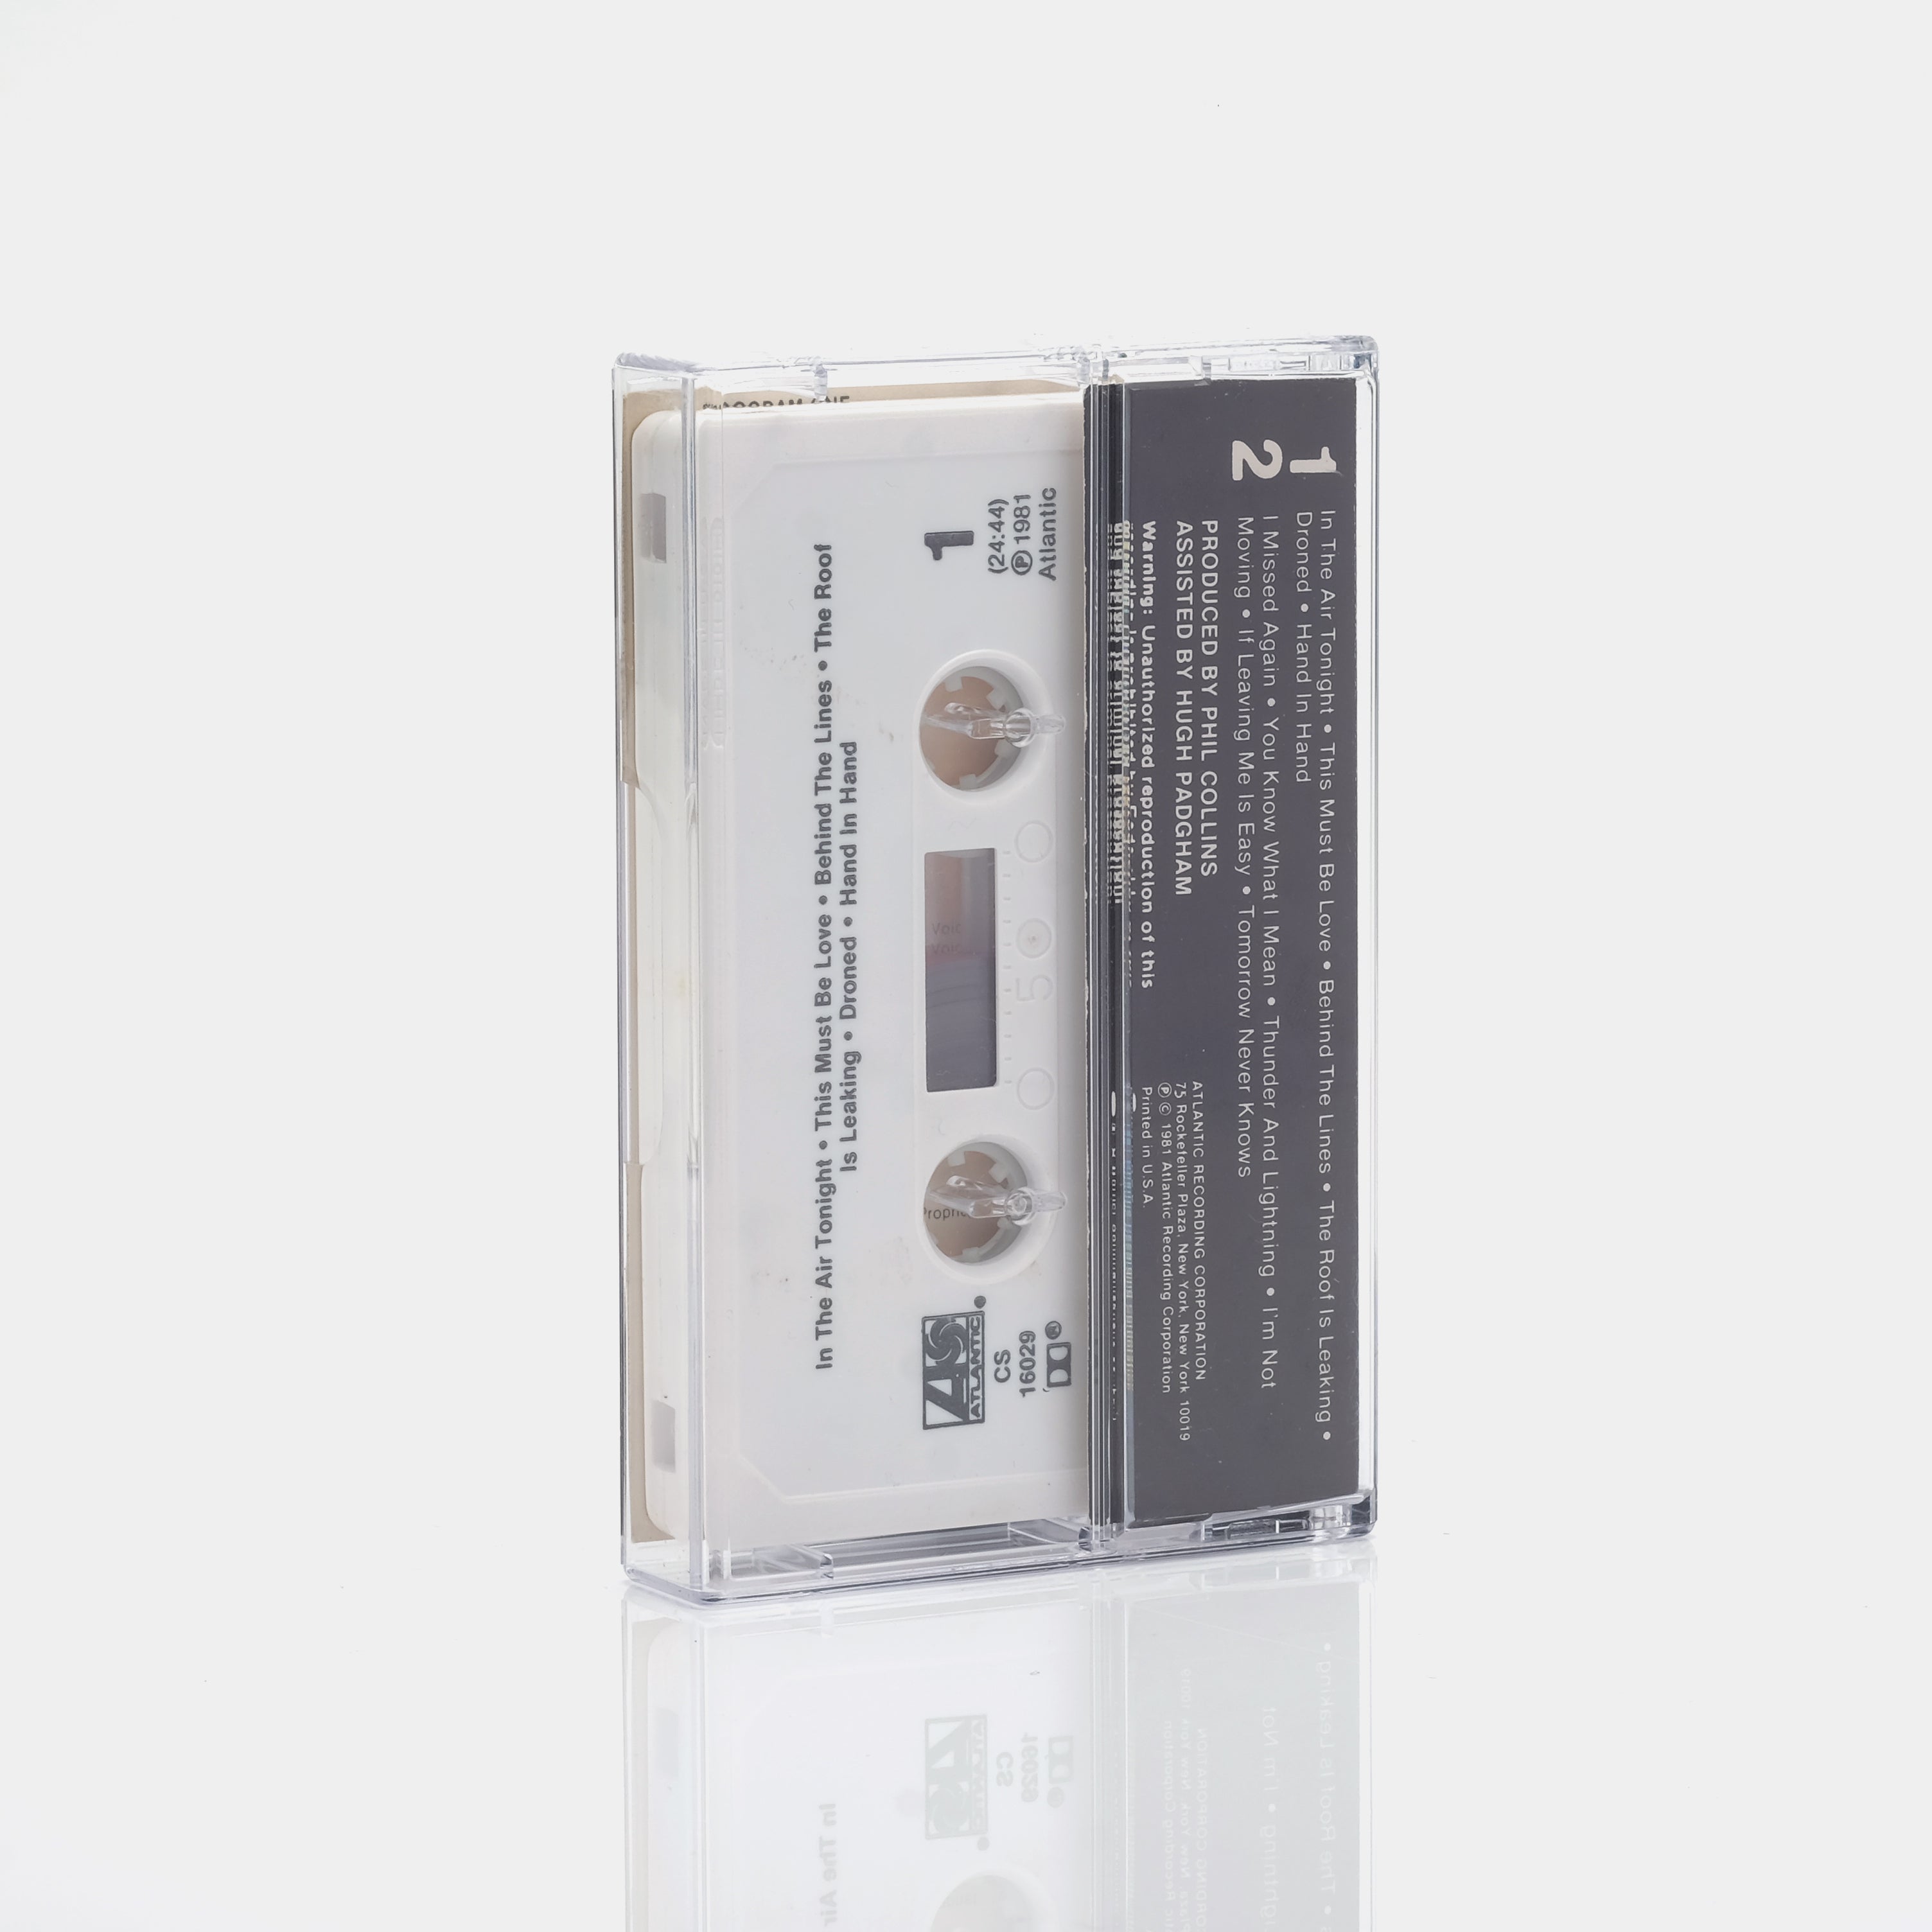 Phil Collins - Face Value Cassette Tape